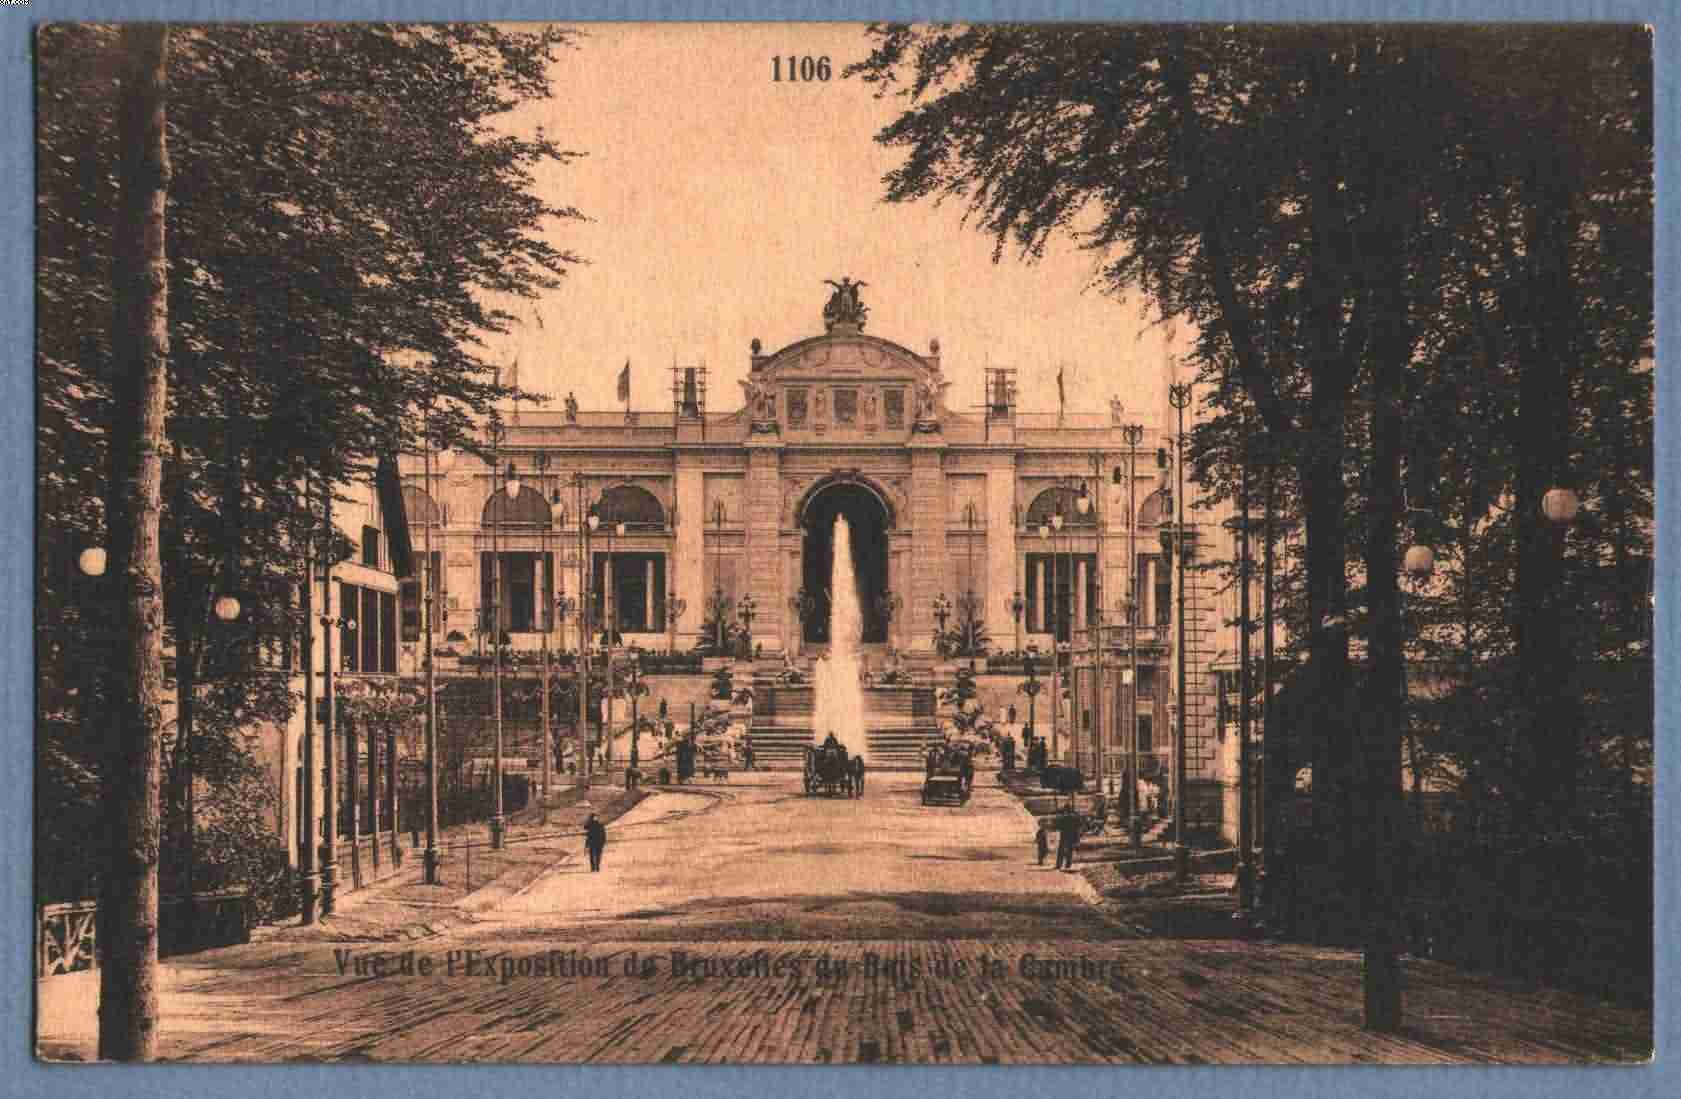 ** BRUXELLES - BRUSSEL ** Exposition 1910 (Vue De L'expo De Bruxelles Du Bois De La Cambre), Zicht Op Expo Vanuit Bos - Bruxelles La Nuit